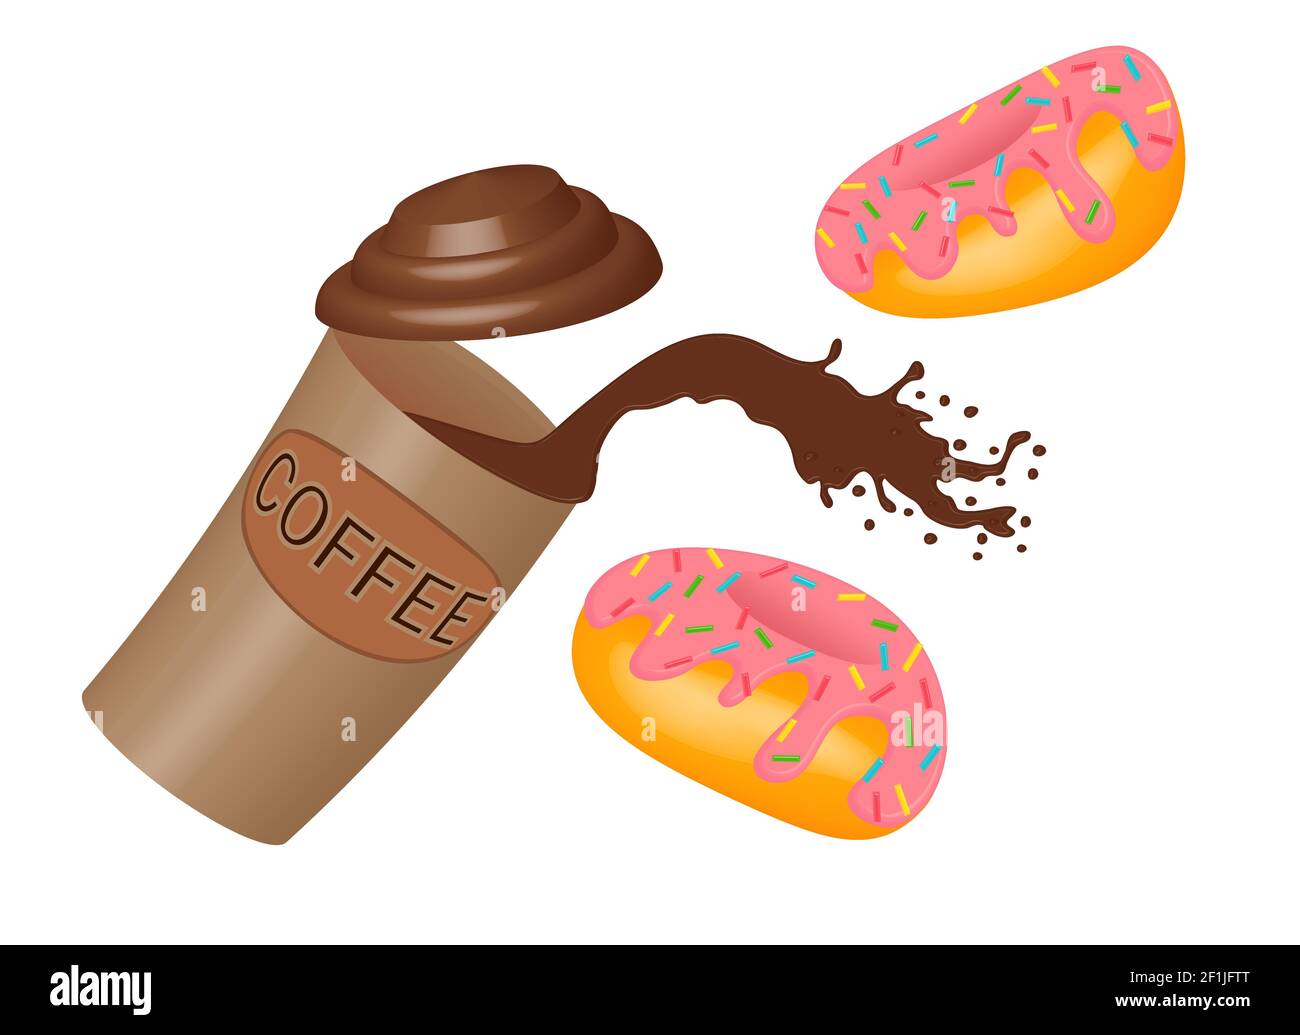 Spritzer Kaffee in einer Papiertasse und Donuts mit rosa Vereisung. Essen zum Mitnehmen, ein Spritzer heißer Schokolade aus einem Einwegbecher und fliegende Karamell-Donuts Stockfoto